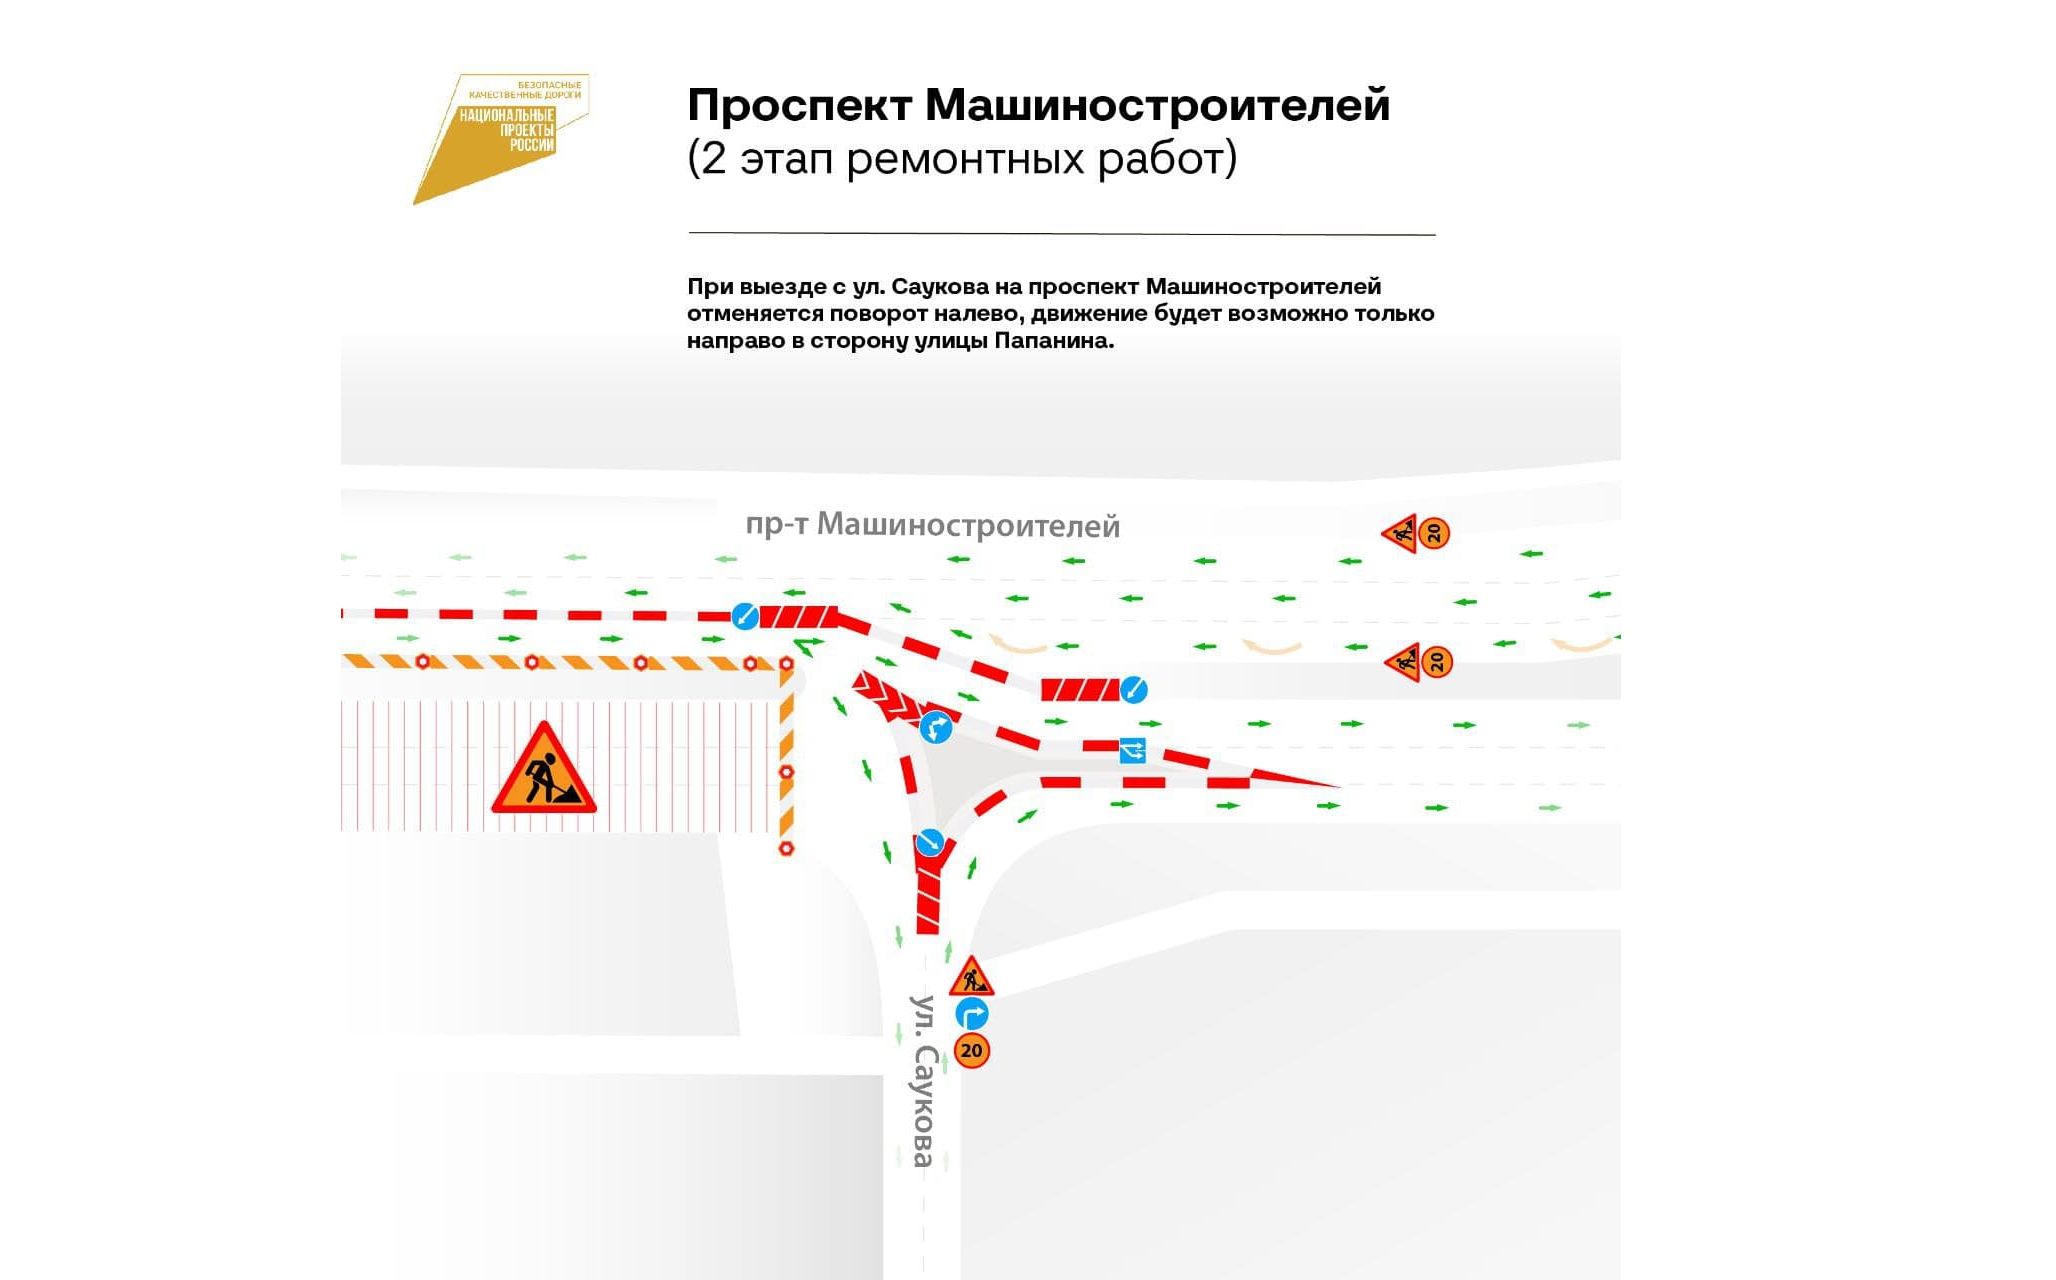 В Ярославле на проспекте Машиностроителей перекроют новый участок дороги: схема объезда